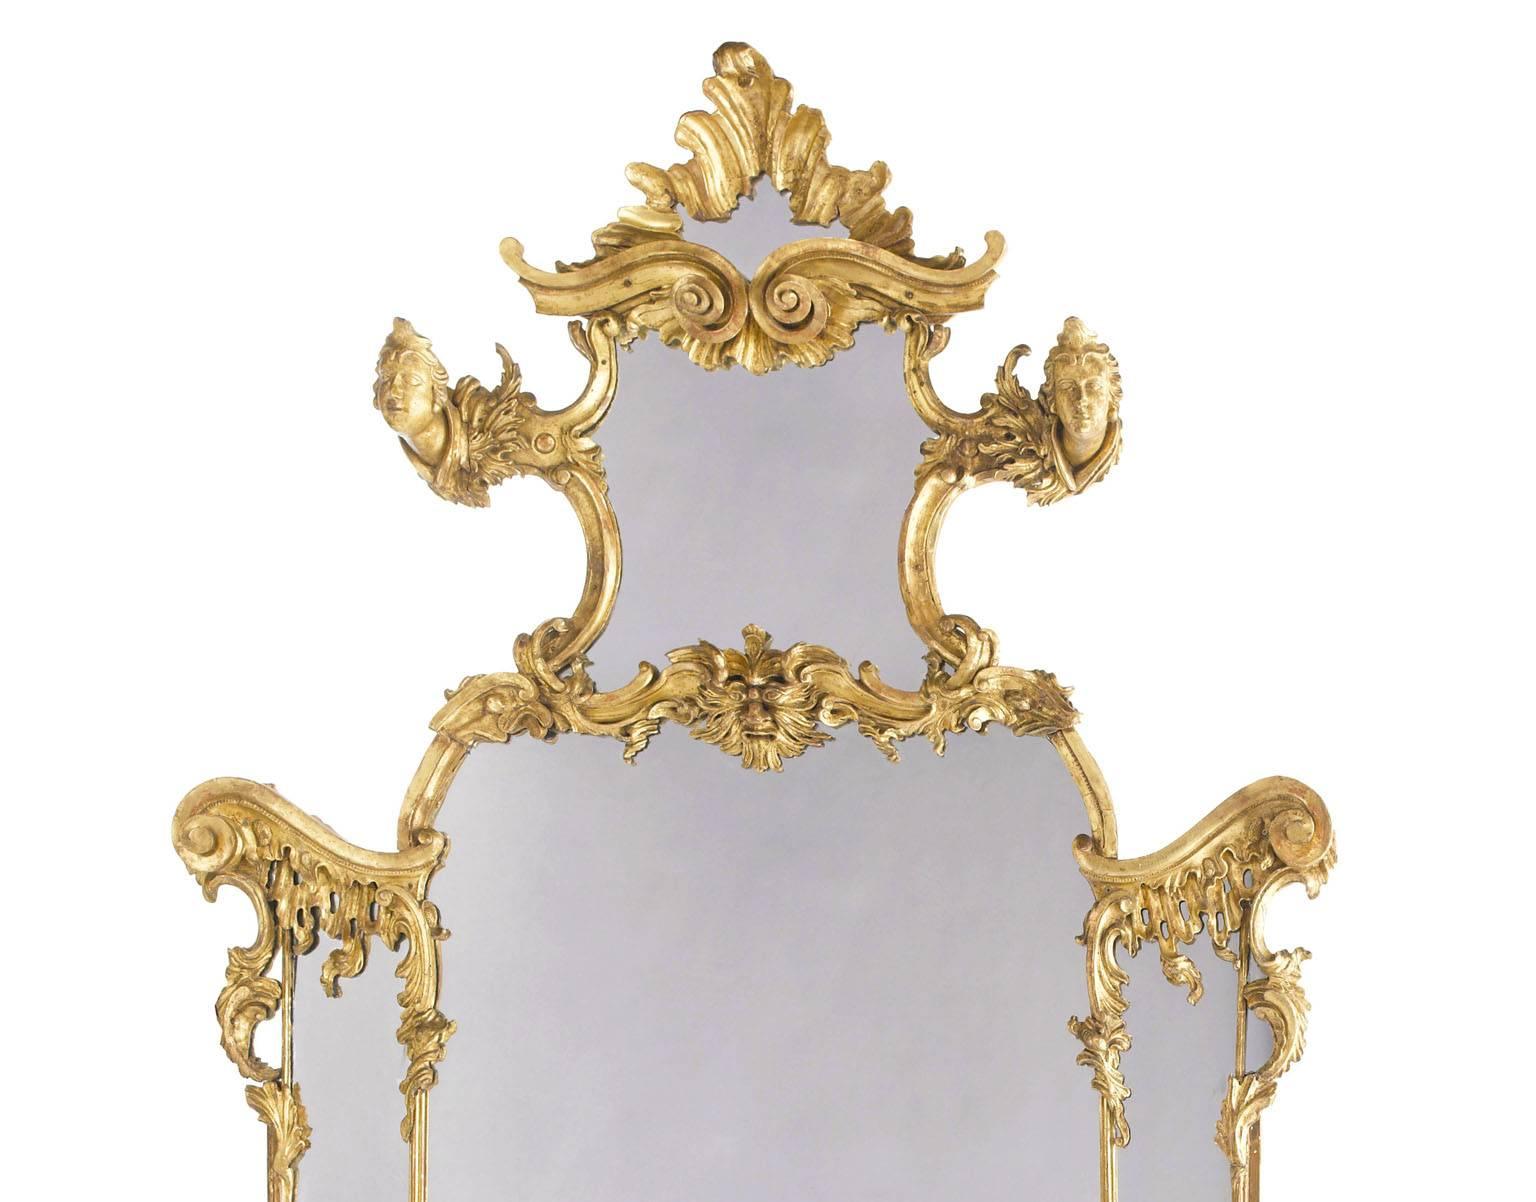 Très beau miroir figuratif en bois doré sculpté rococo italien du XIXe siècle. Les plaques de miroir sectionnelles arquées sont entourées de bordures décorées de rinceaux et de feuillages entrecoupés de bustes et de masques, et reposent sur des